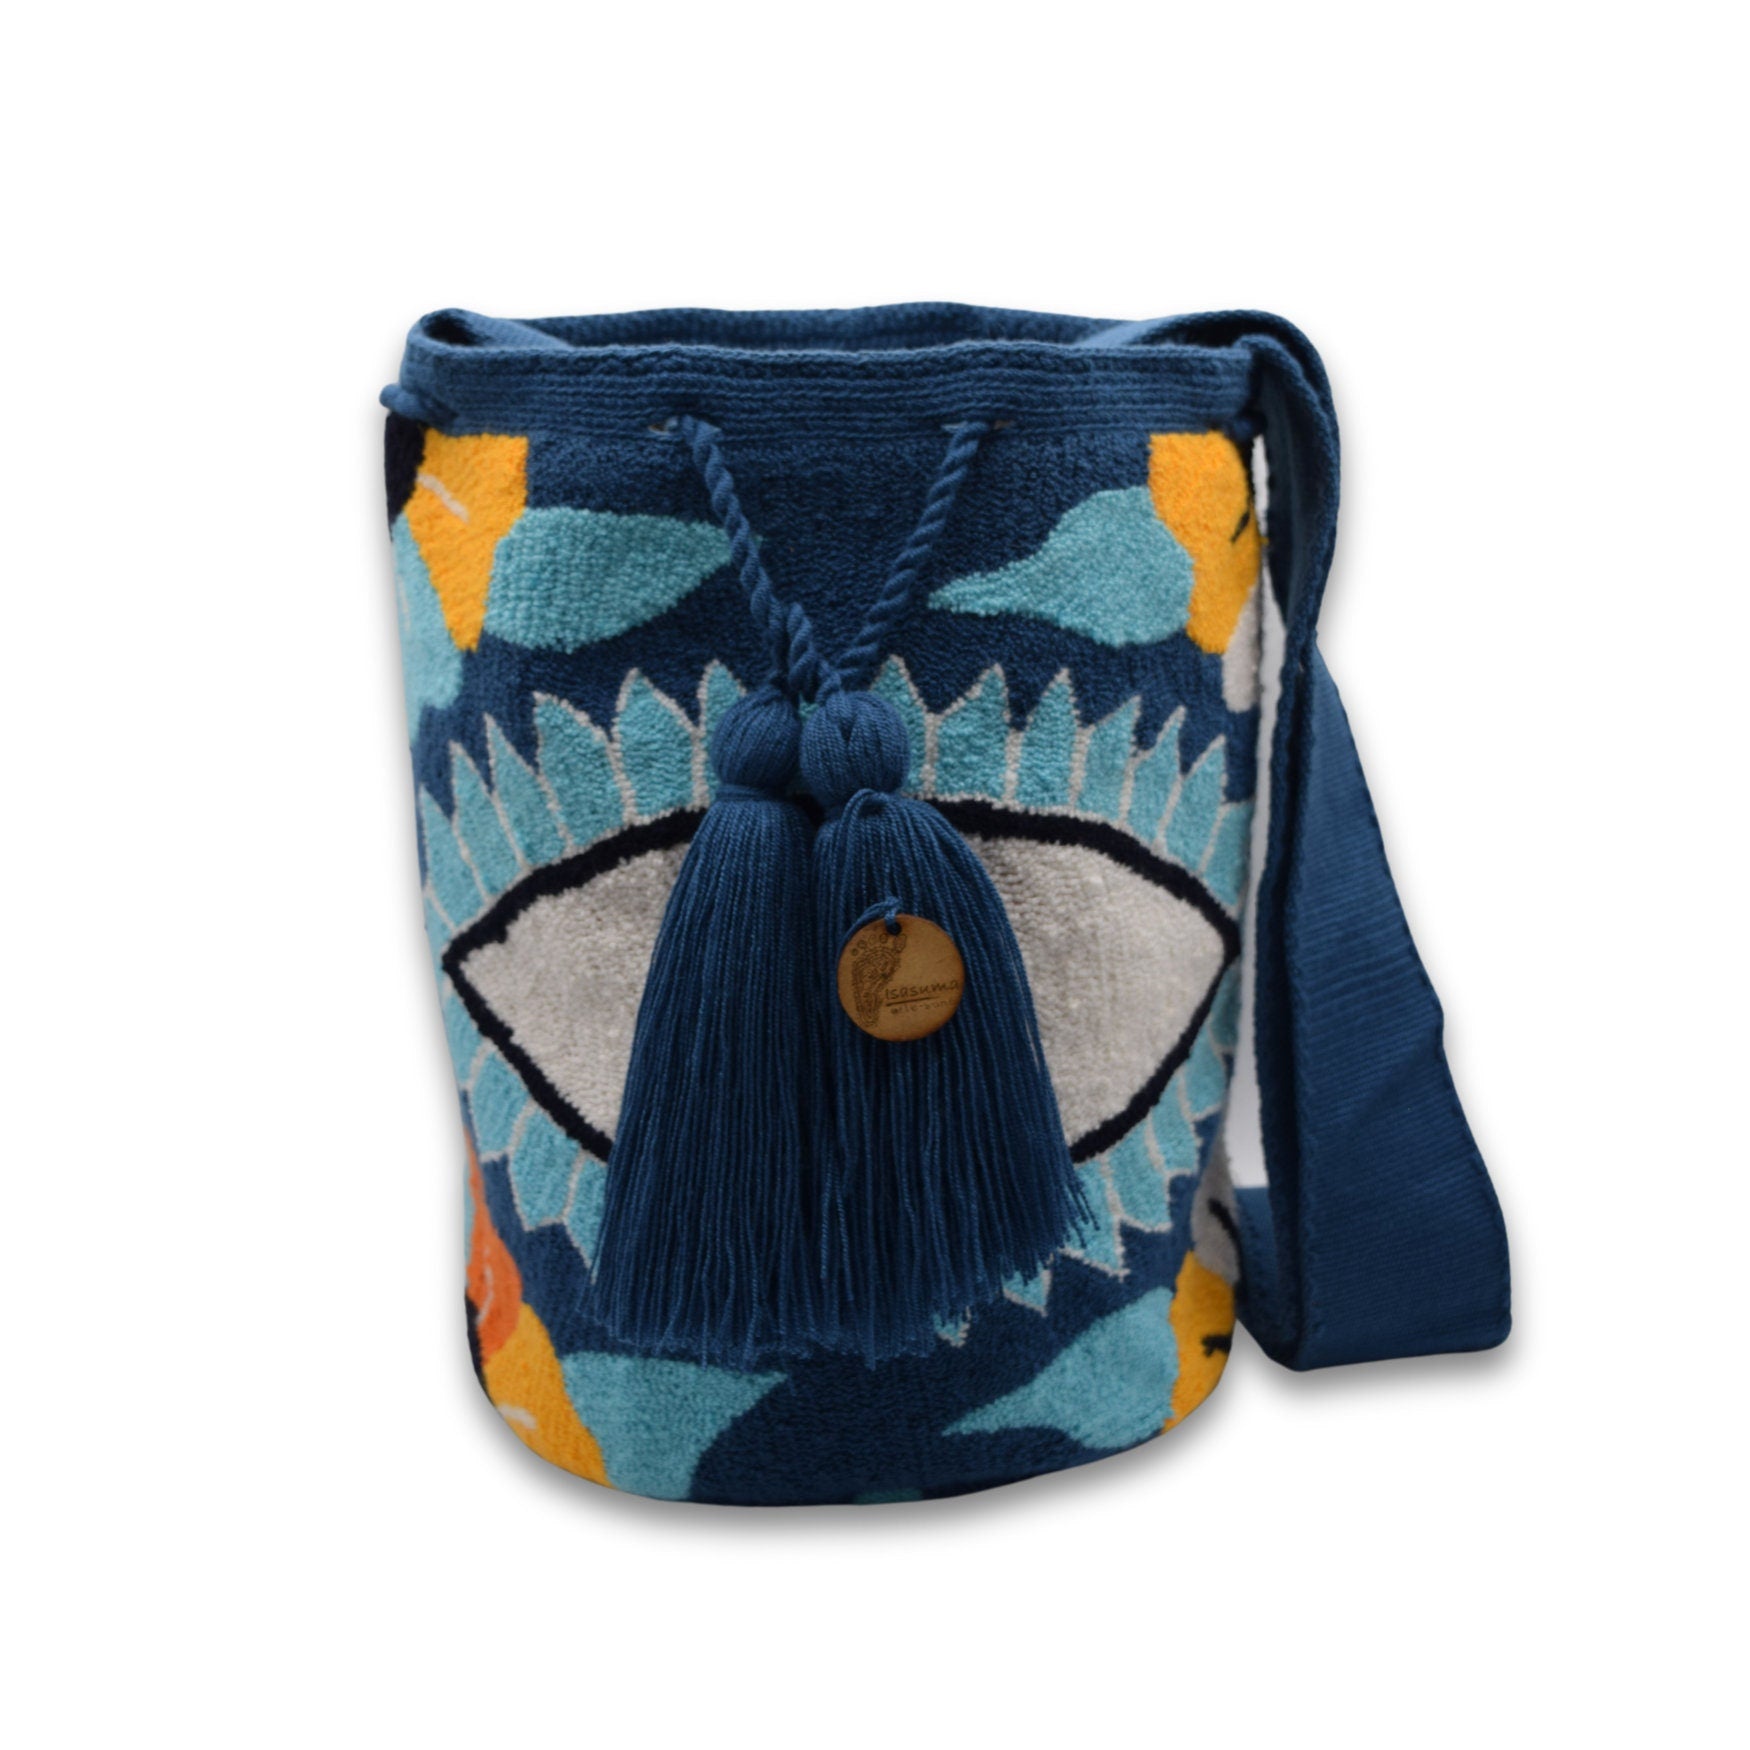 Wayuu Mochila Bag | Large Tapizada | Handmade in Colombia | Blue Blue Evil Lucky Awaken Eye Flowers